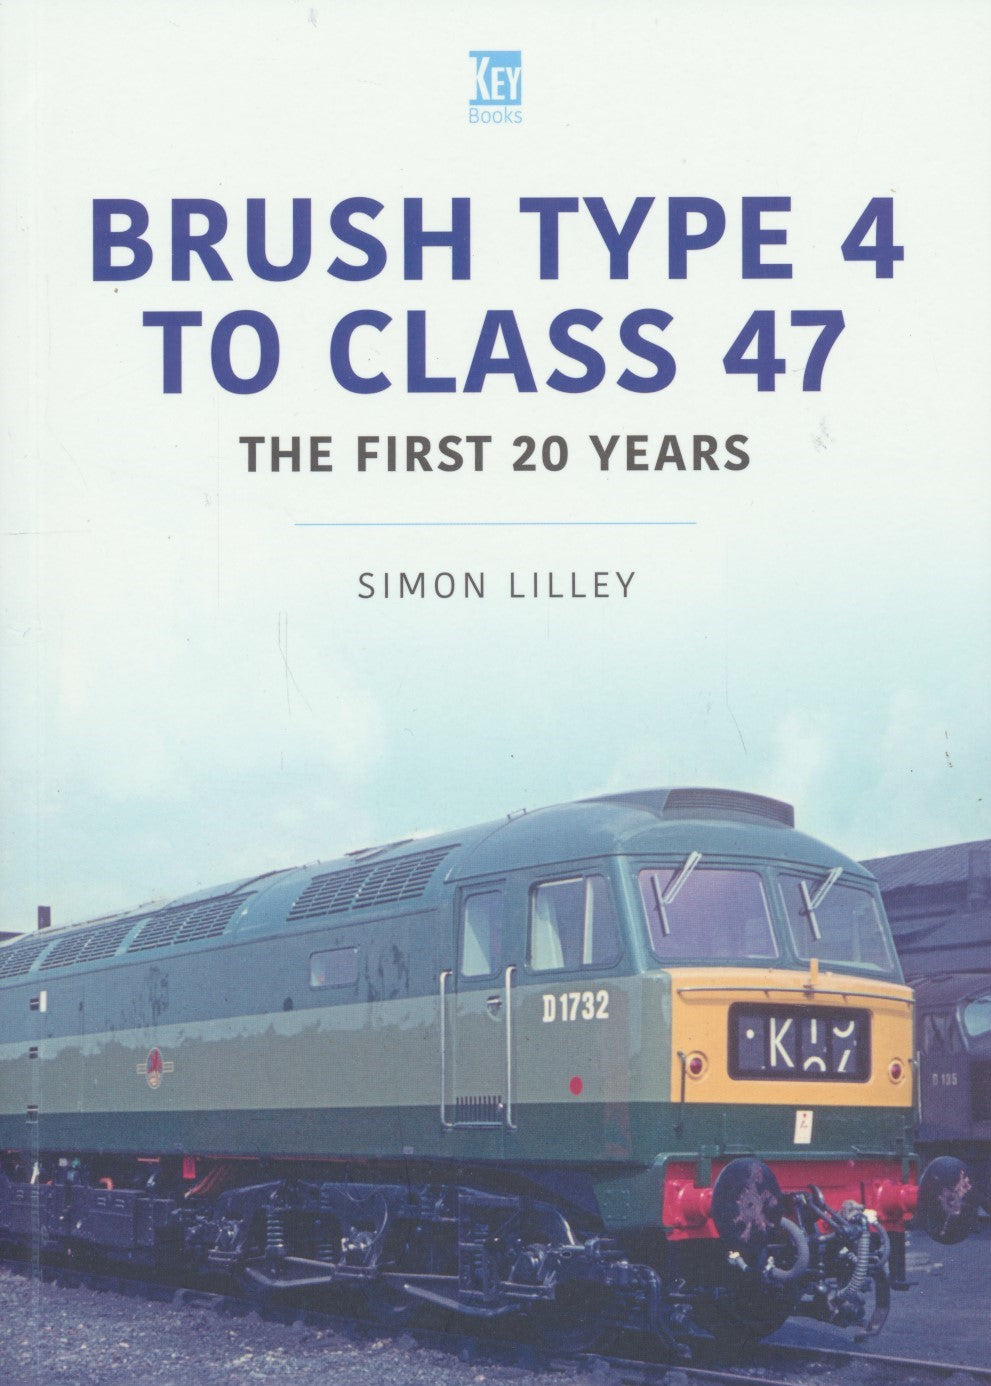 Britain's Railways Series, Volume 44 - Brush Type 4 to Class 47s: The First 20 Years